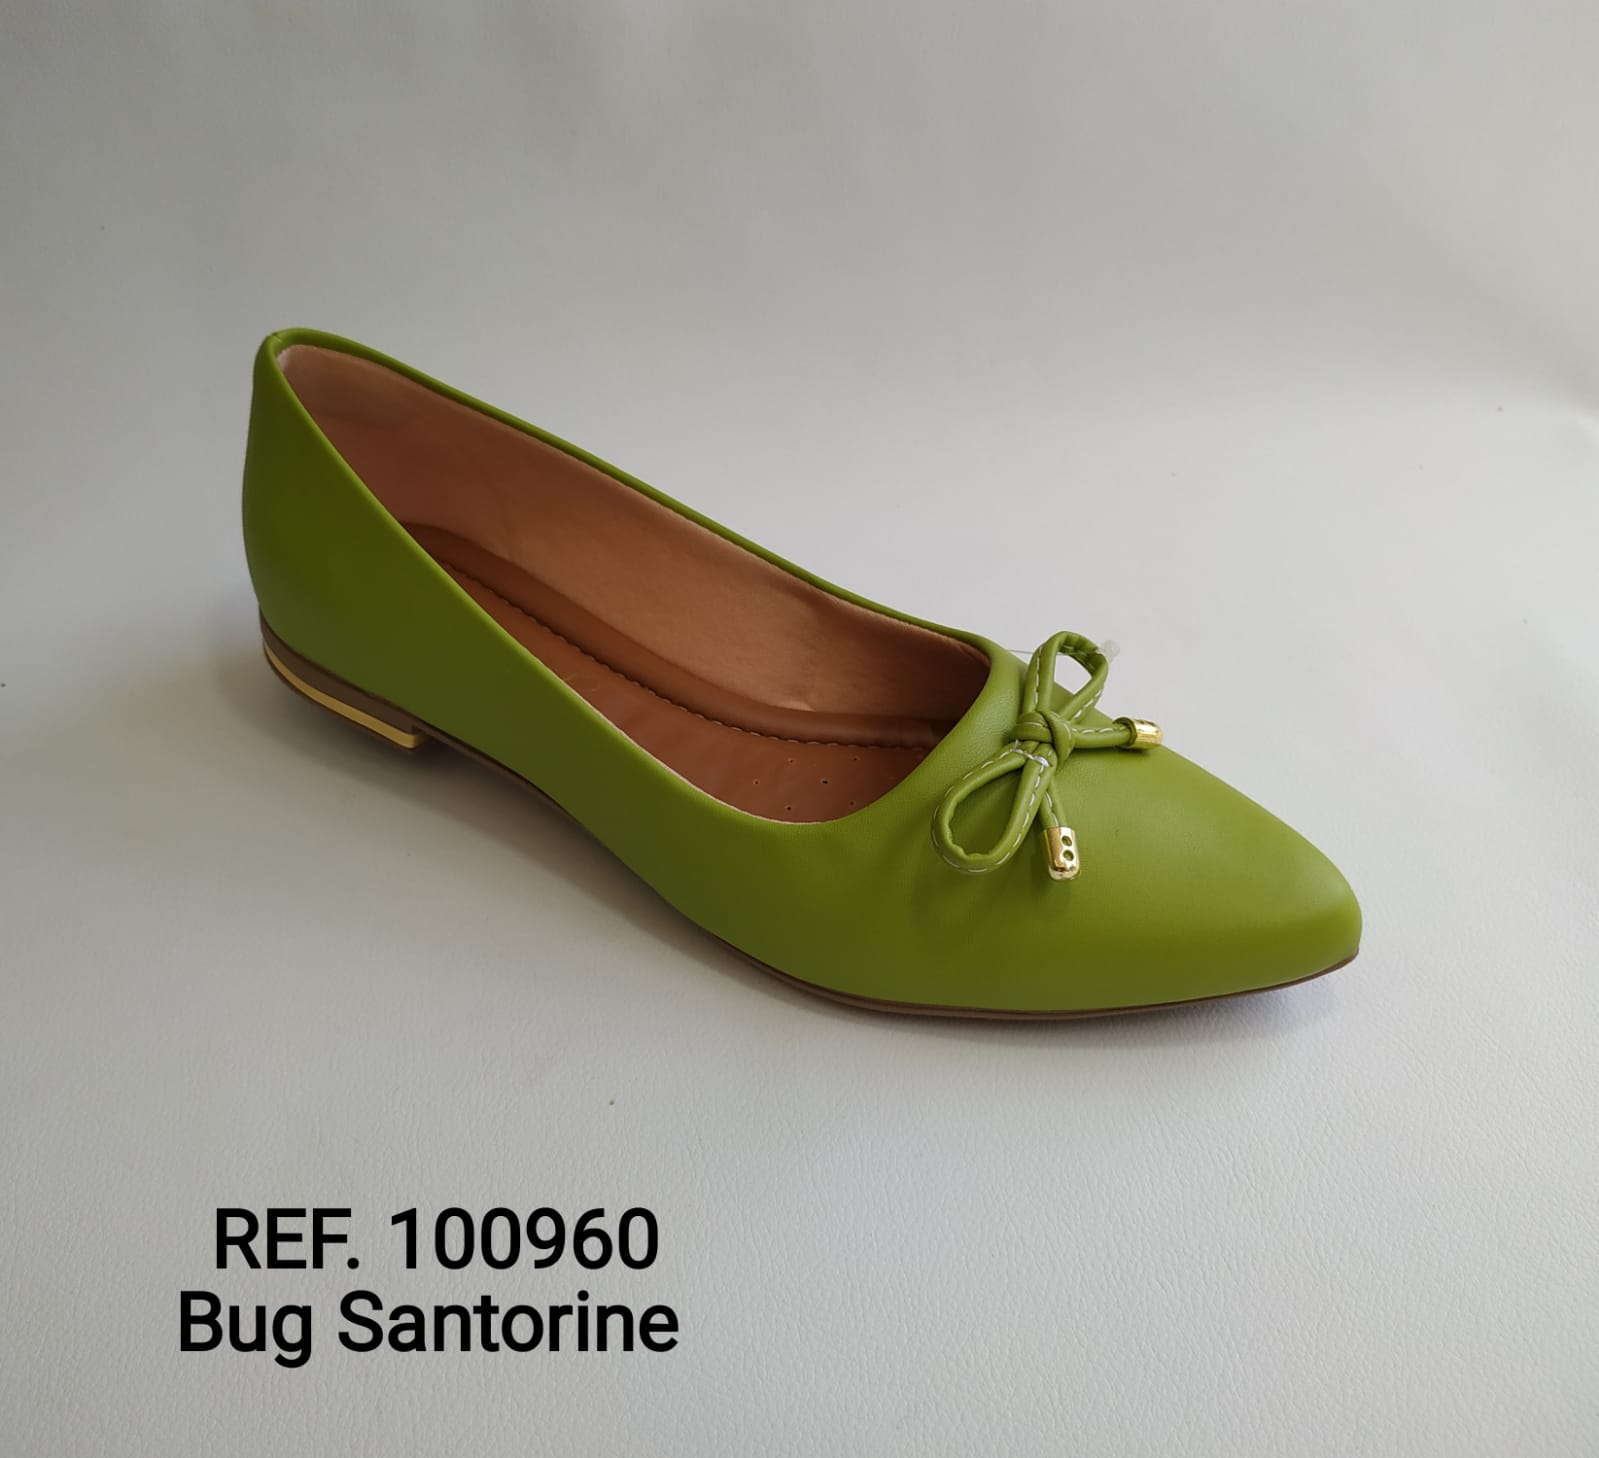 Ref. 100960 Bug Santorine